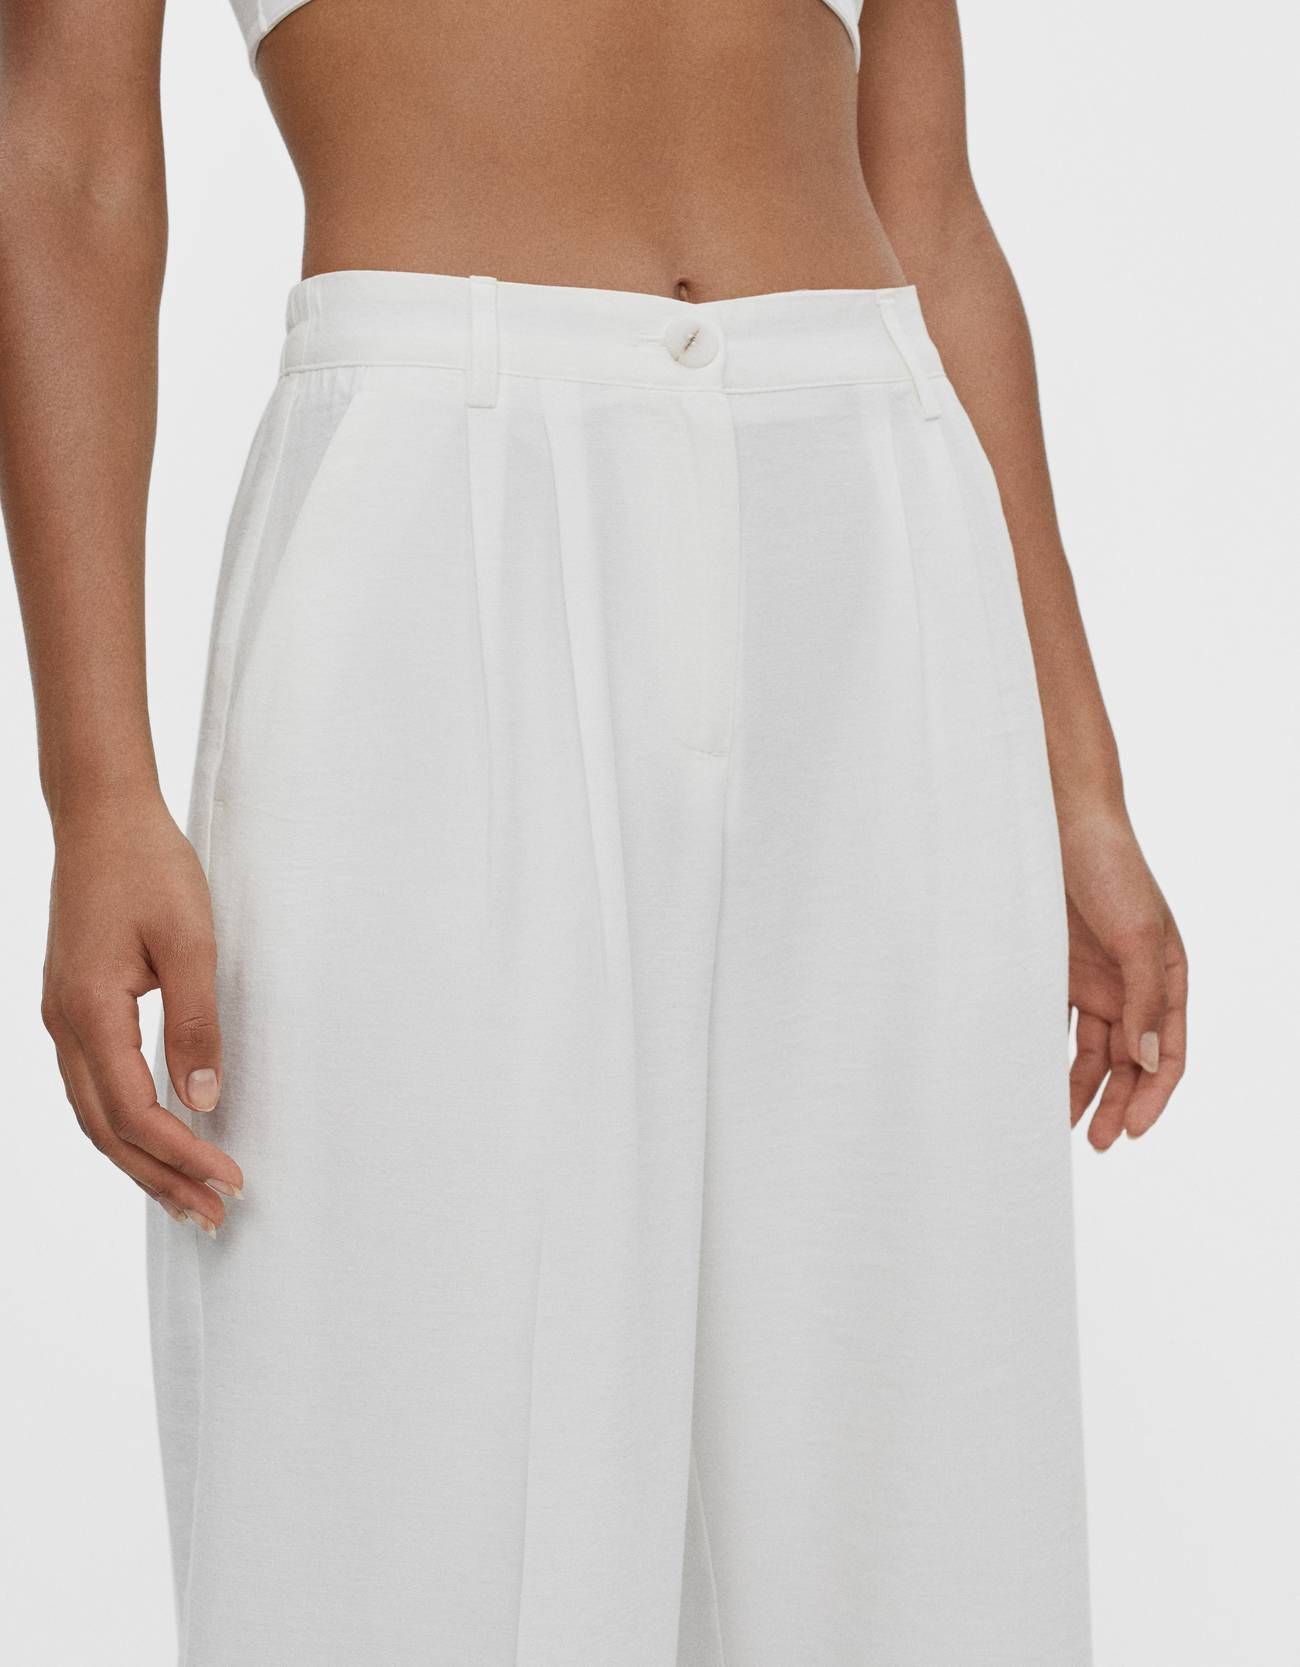 El pantalón ancho blanco de Bershka que usan las expertas de moda